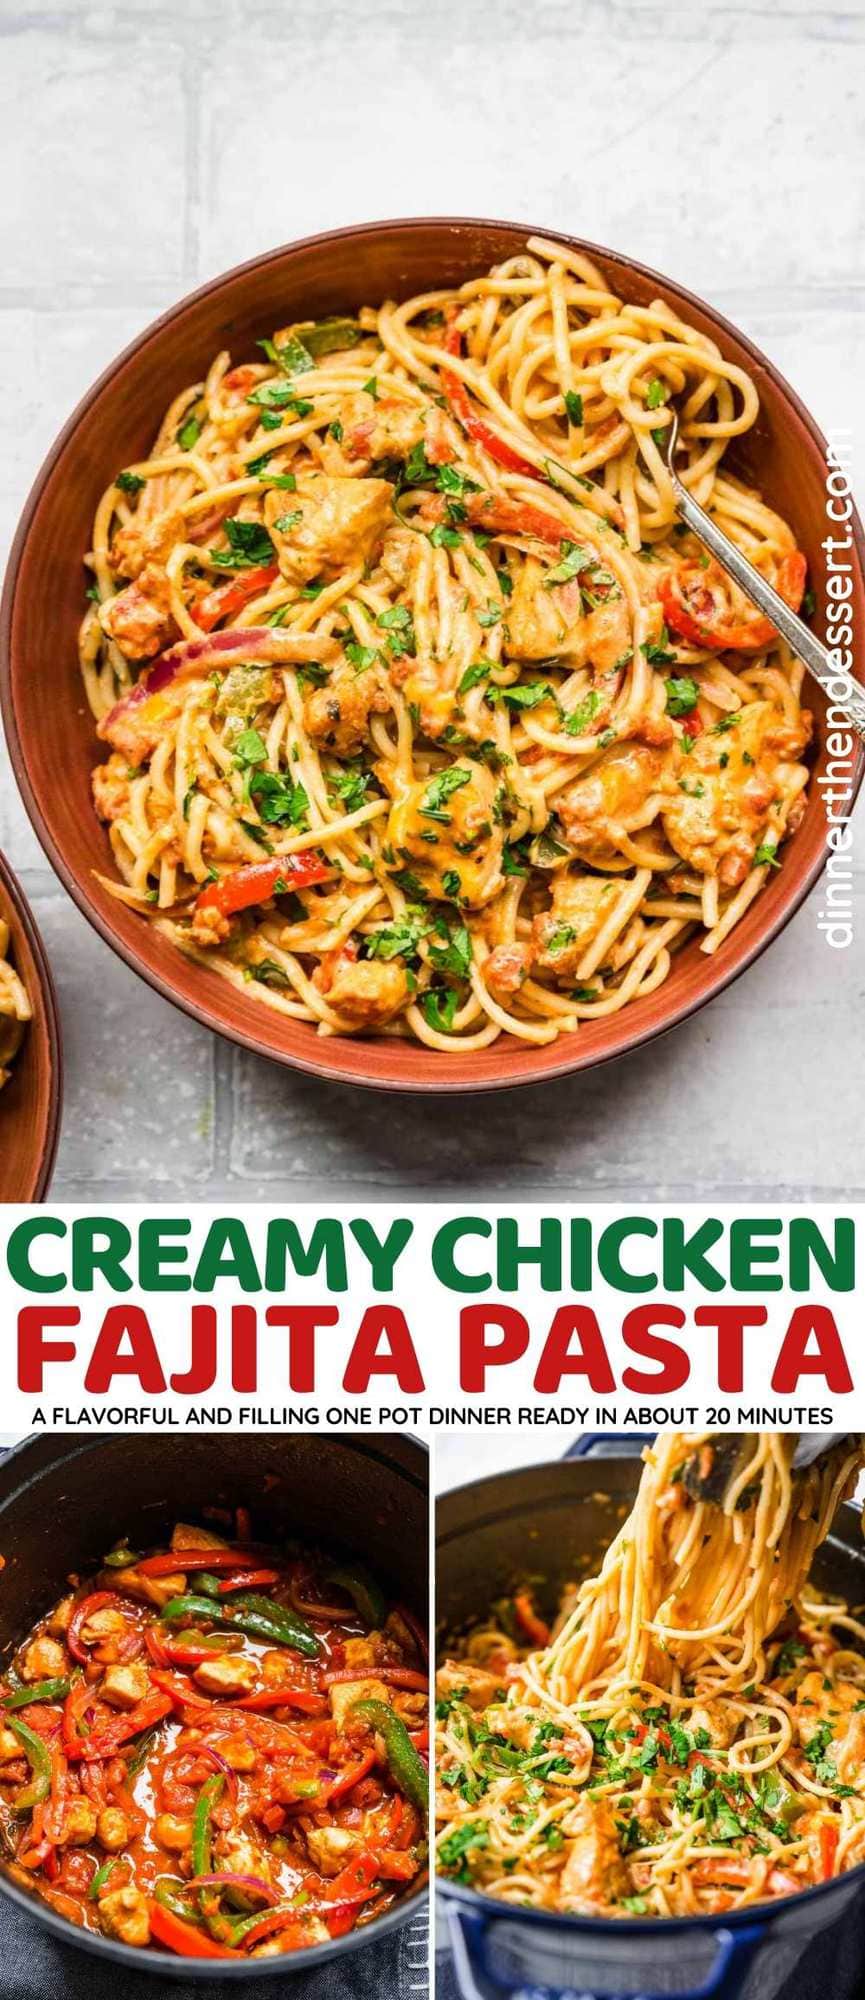 Creamy Chicken Fajita Pasta collage